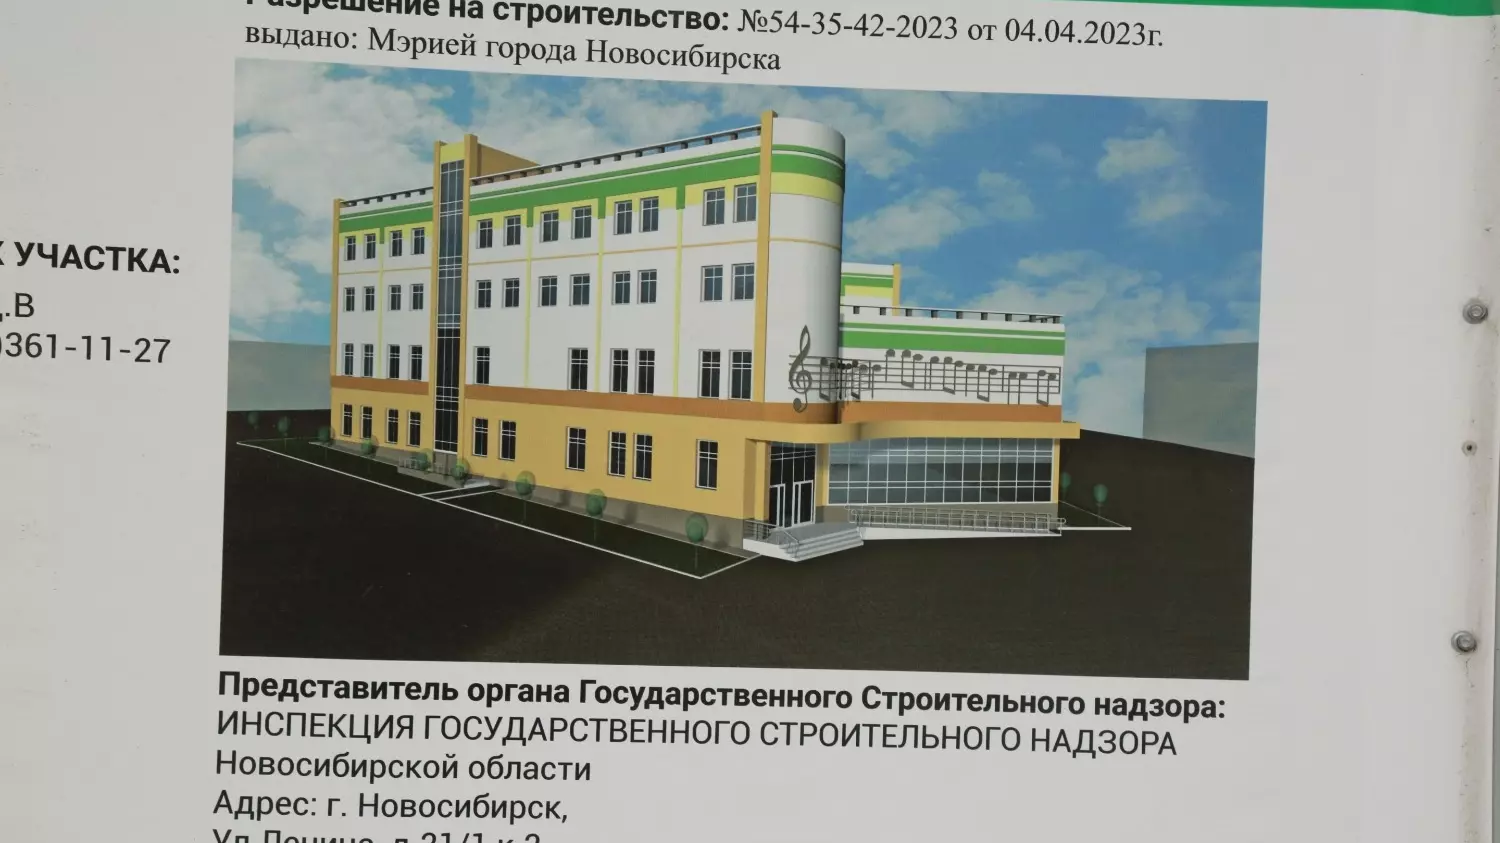 Проект нового здания музыкальной школы в новосибирском Академгородке.